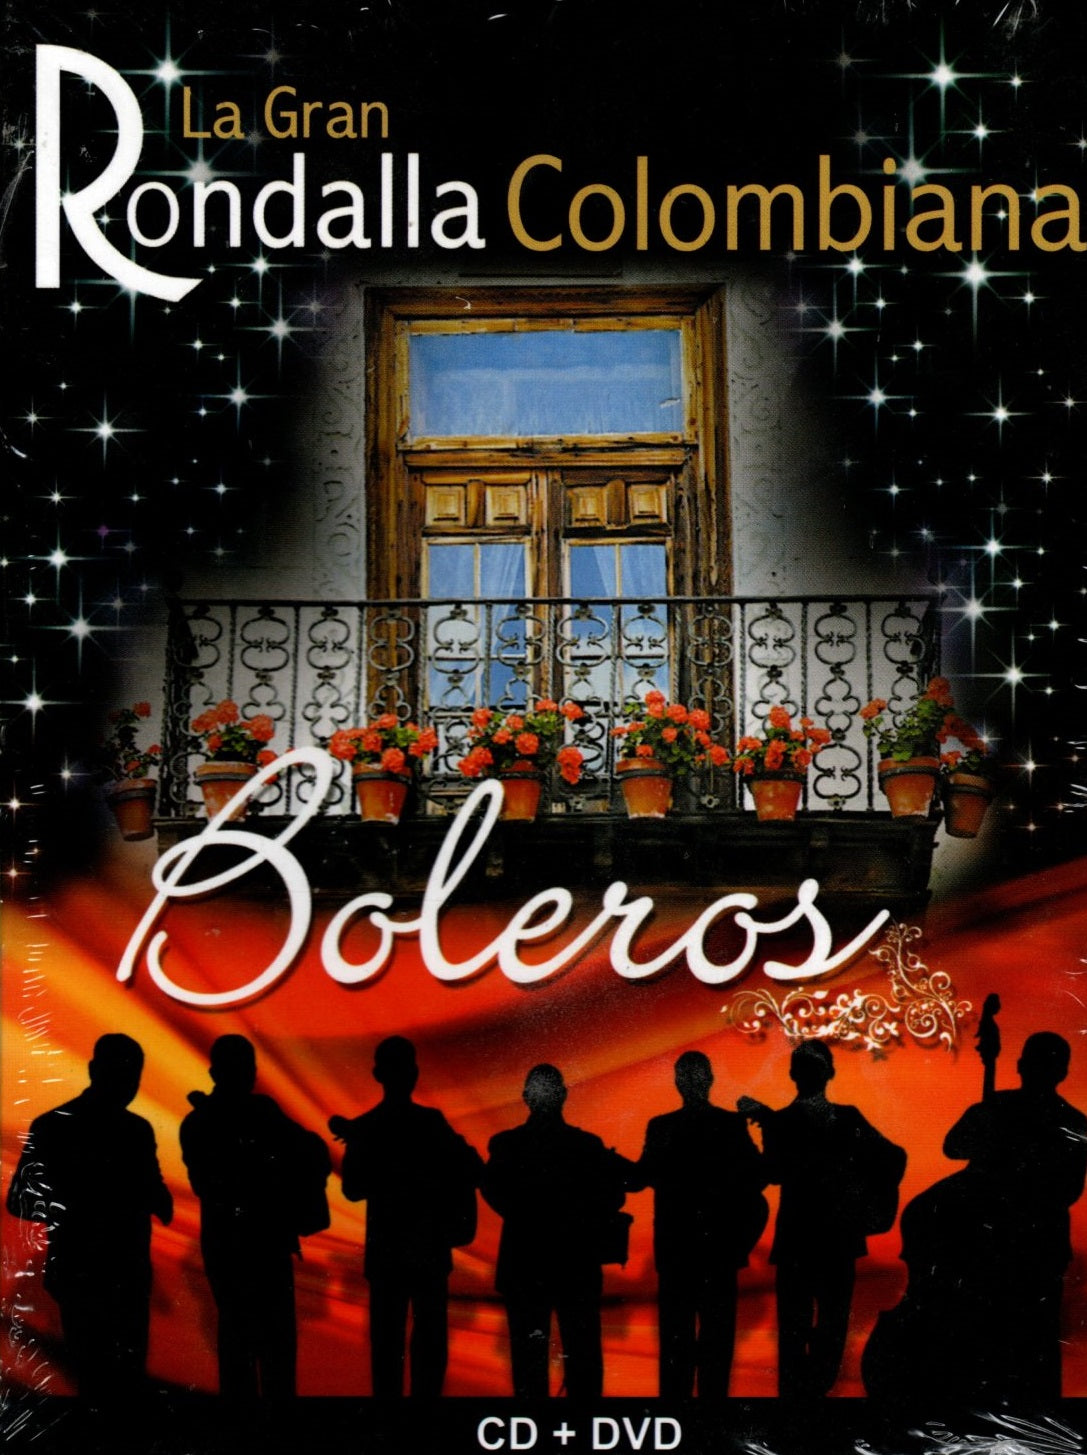 CD+DVD La Gran Rondalla Colombiana - Boleros